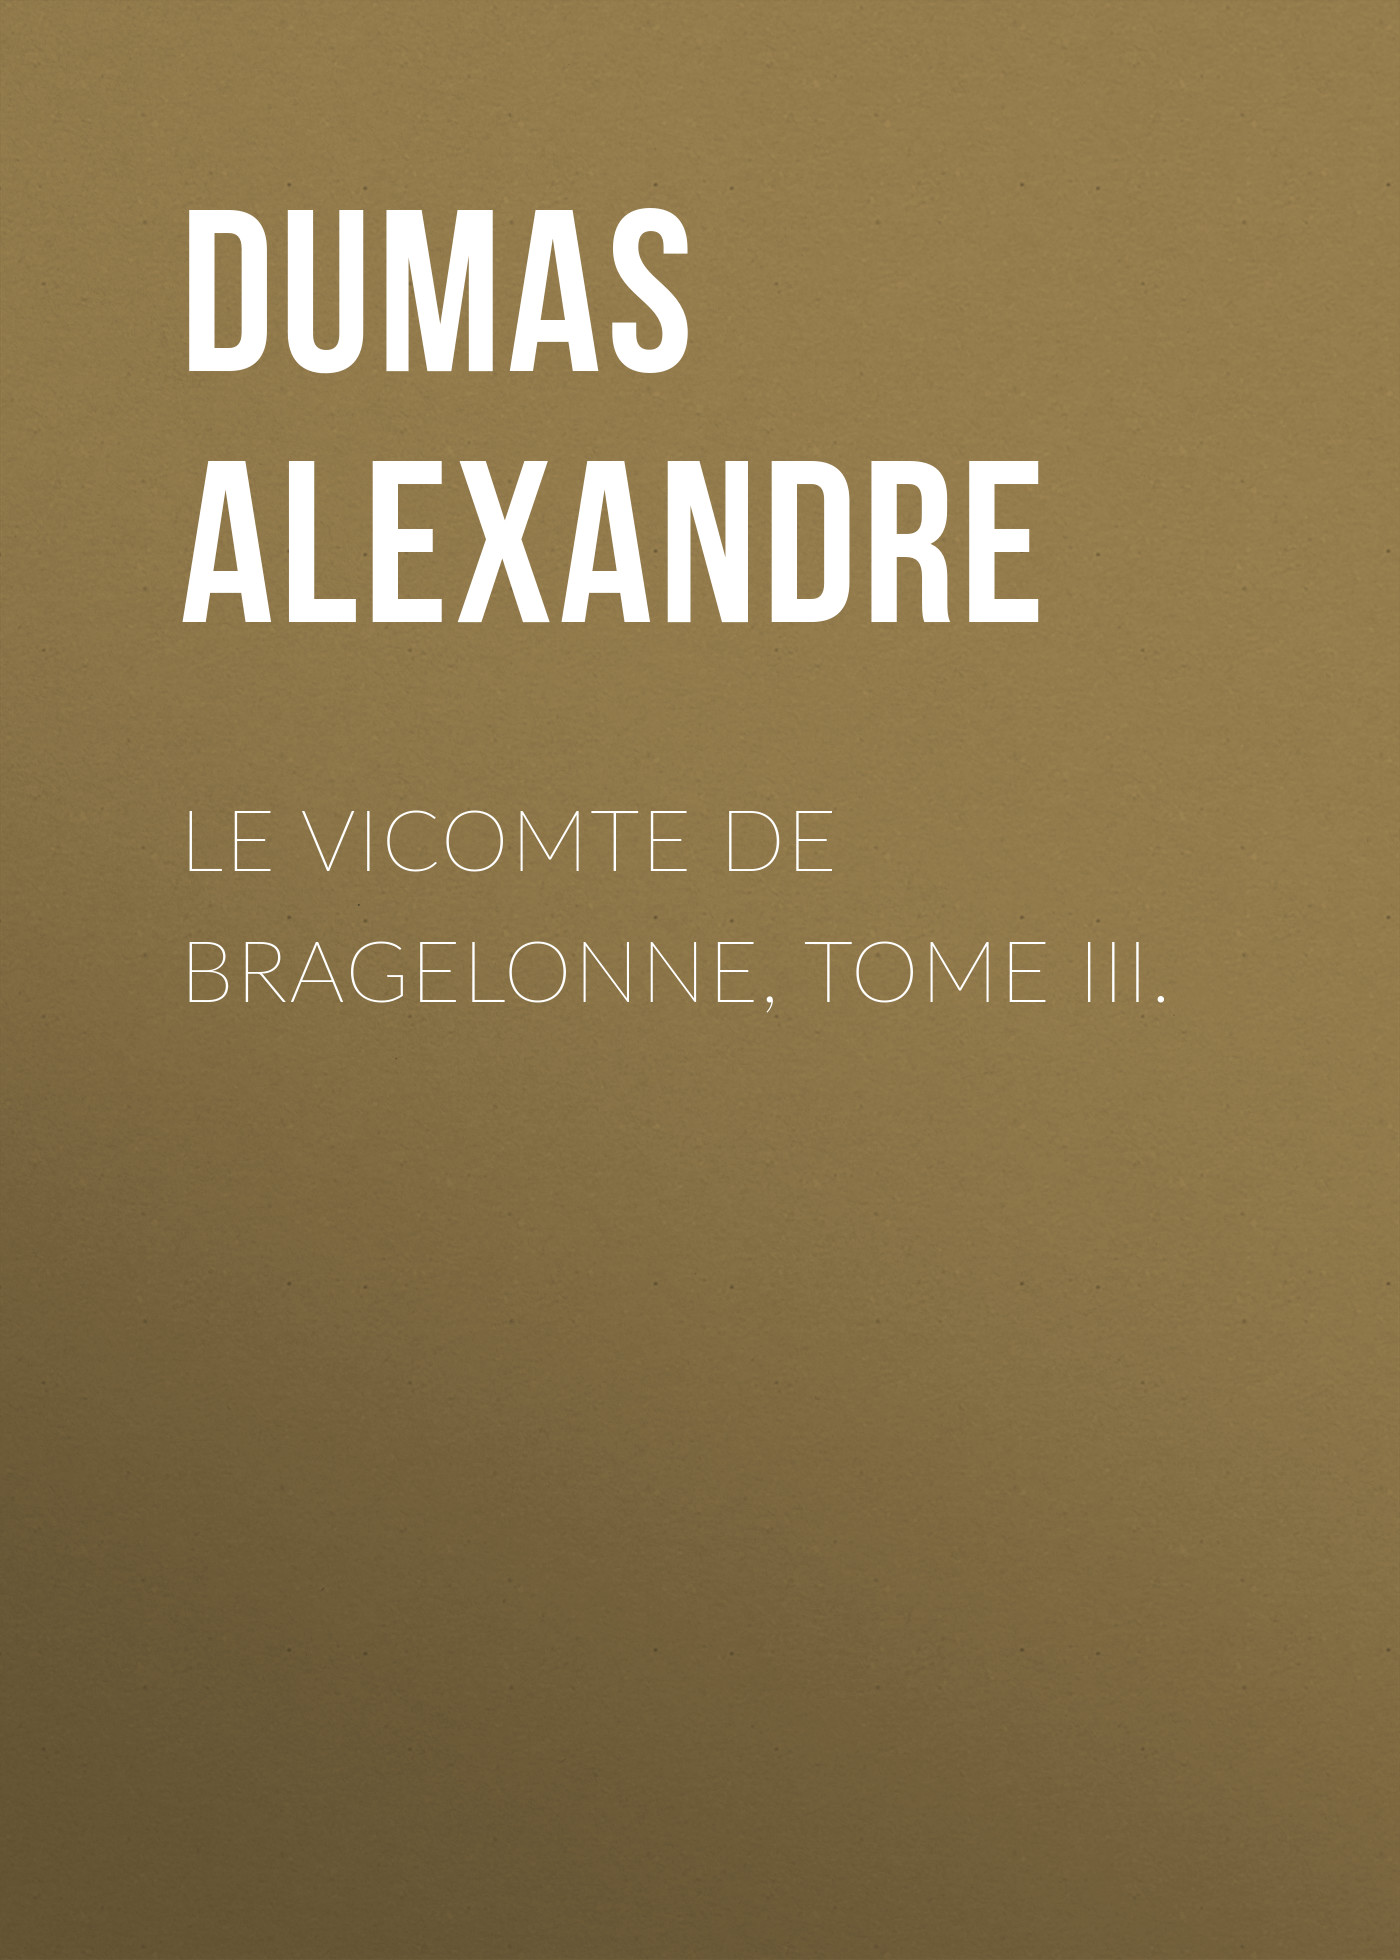 Книга Le vicomte de Bragelonne, Tome III. из серии , созданная Alexandre Dumas, может относится к жанру Литература 19 века, Зарубежная старинная литература, Зарубежная классика. Стоимость электронной книги Le vicomte de Bragelonne, Tome III. с идентификатором 25201823 составляет 0 руб.